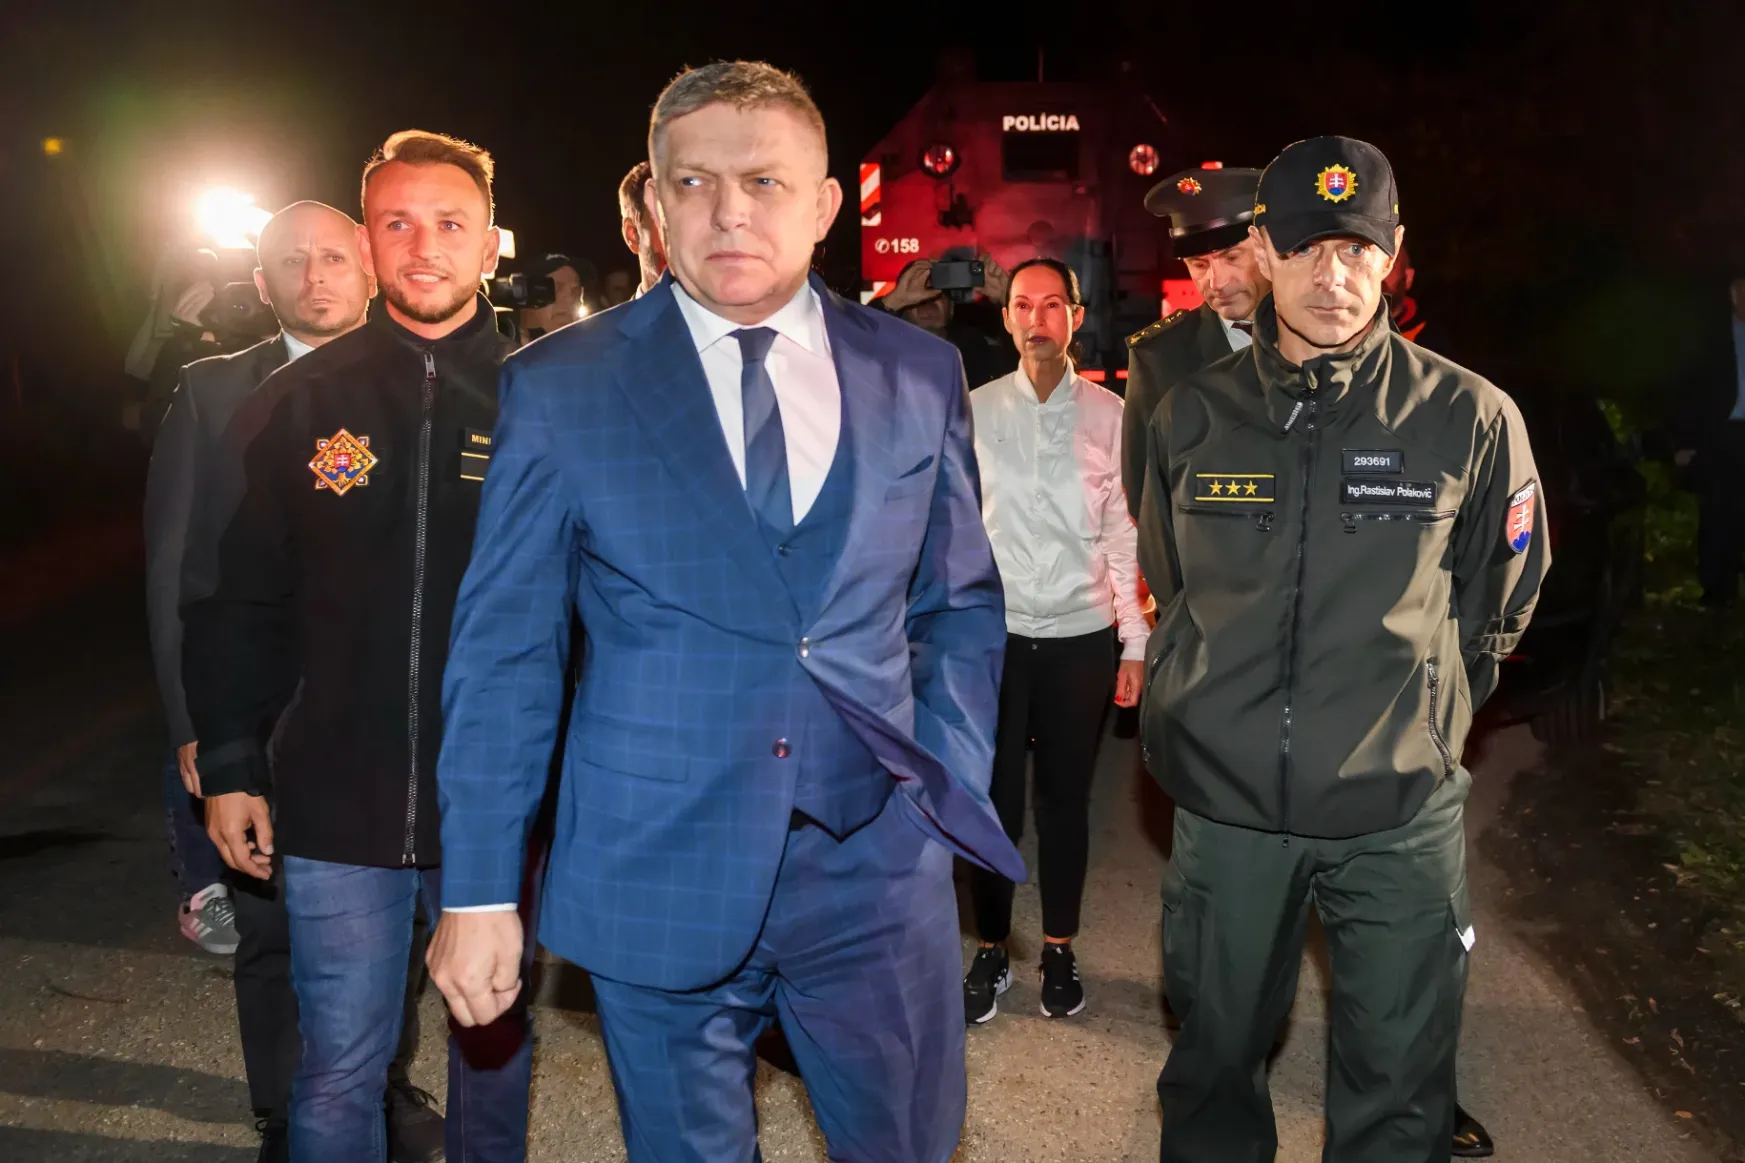 Fico rendőri tisztogatással, a határon pedig erőfitogtató színházzal tért vissza